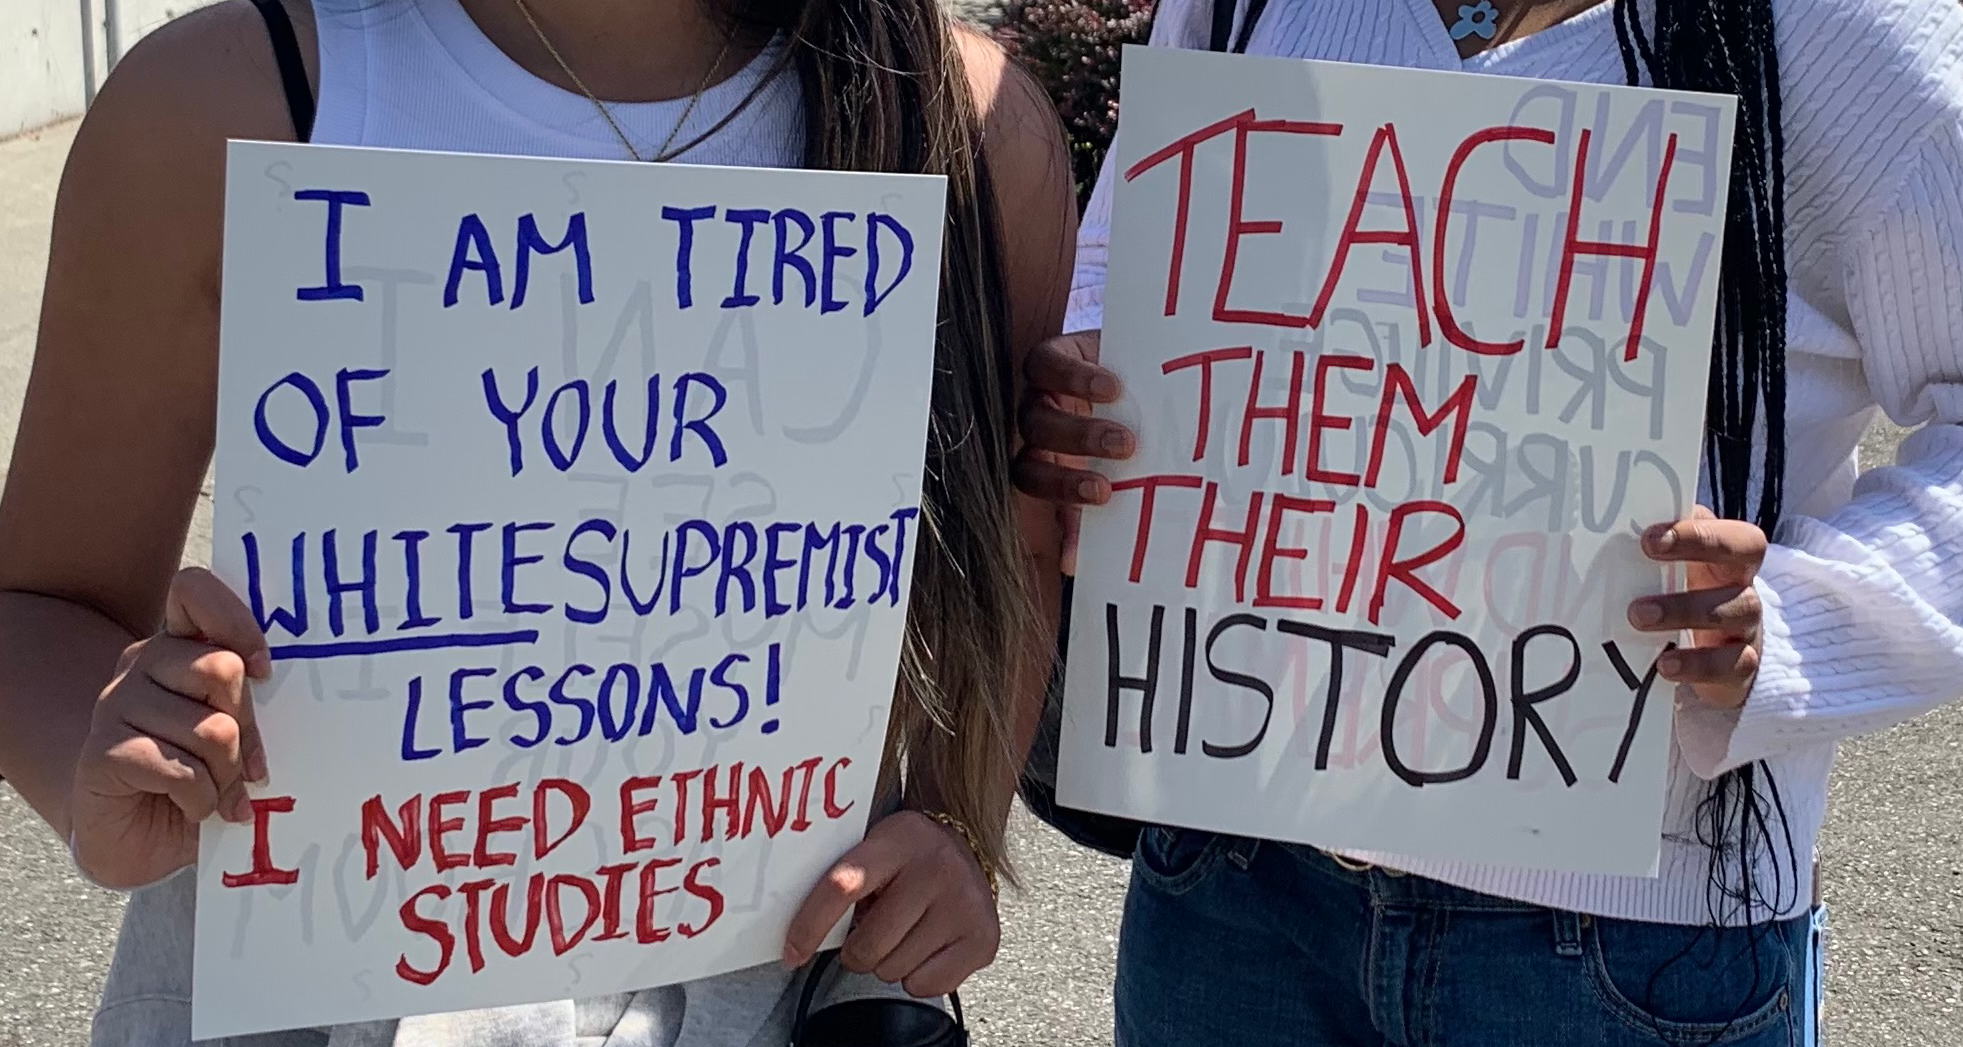 Teach them their history.